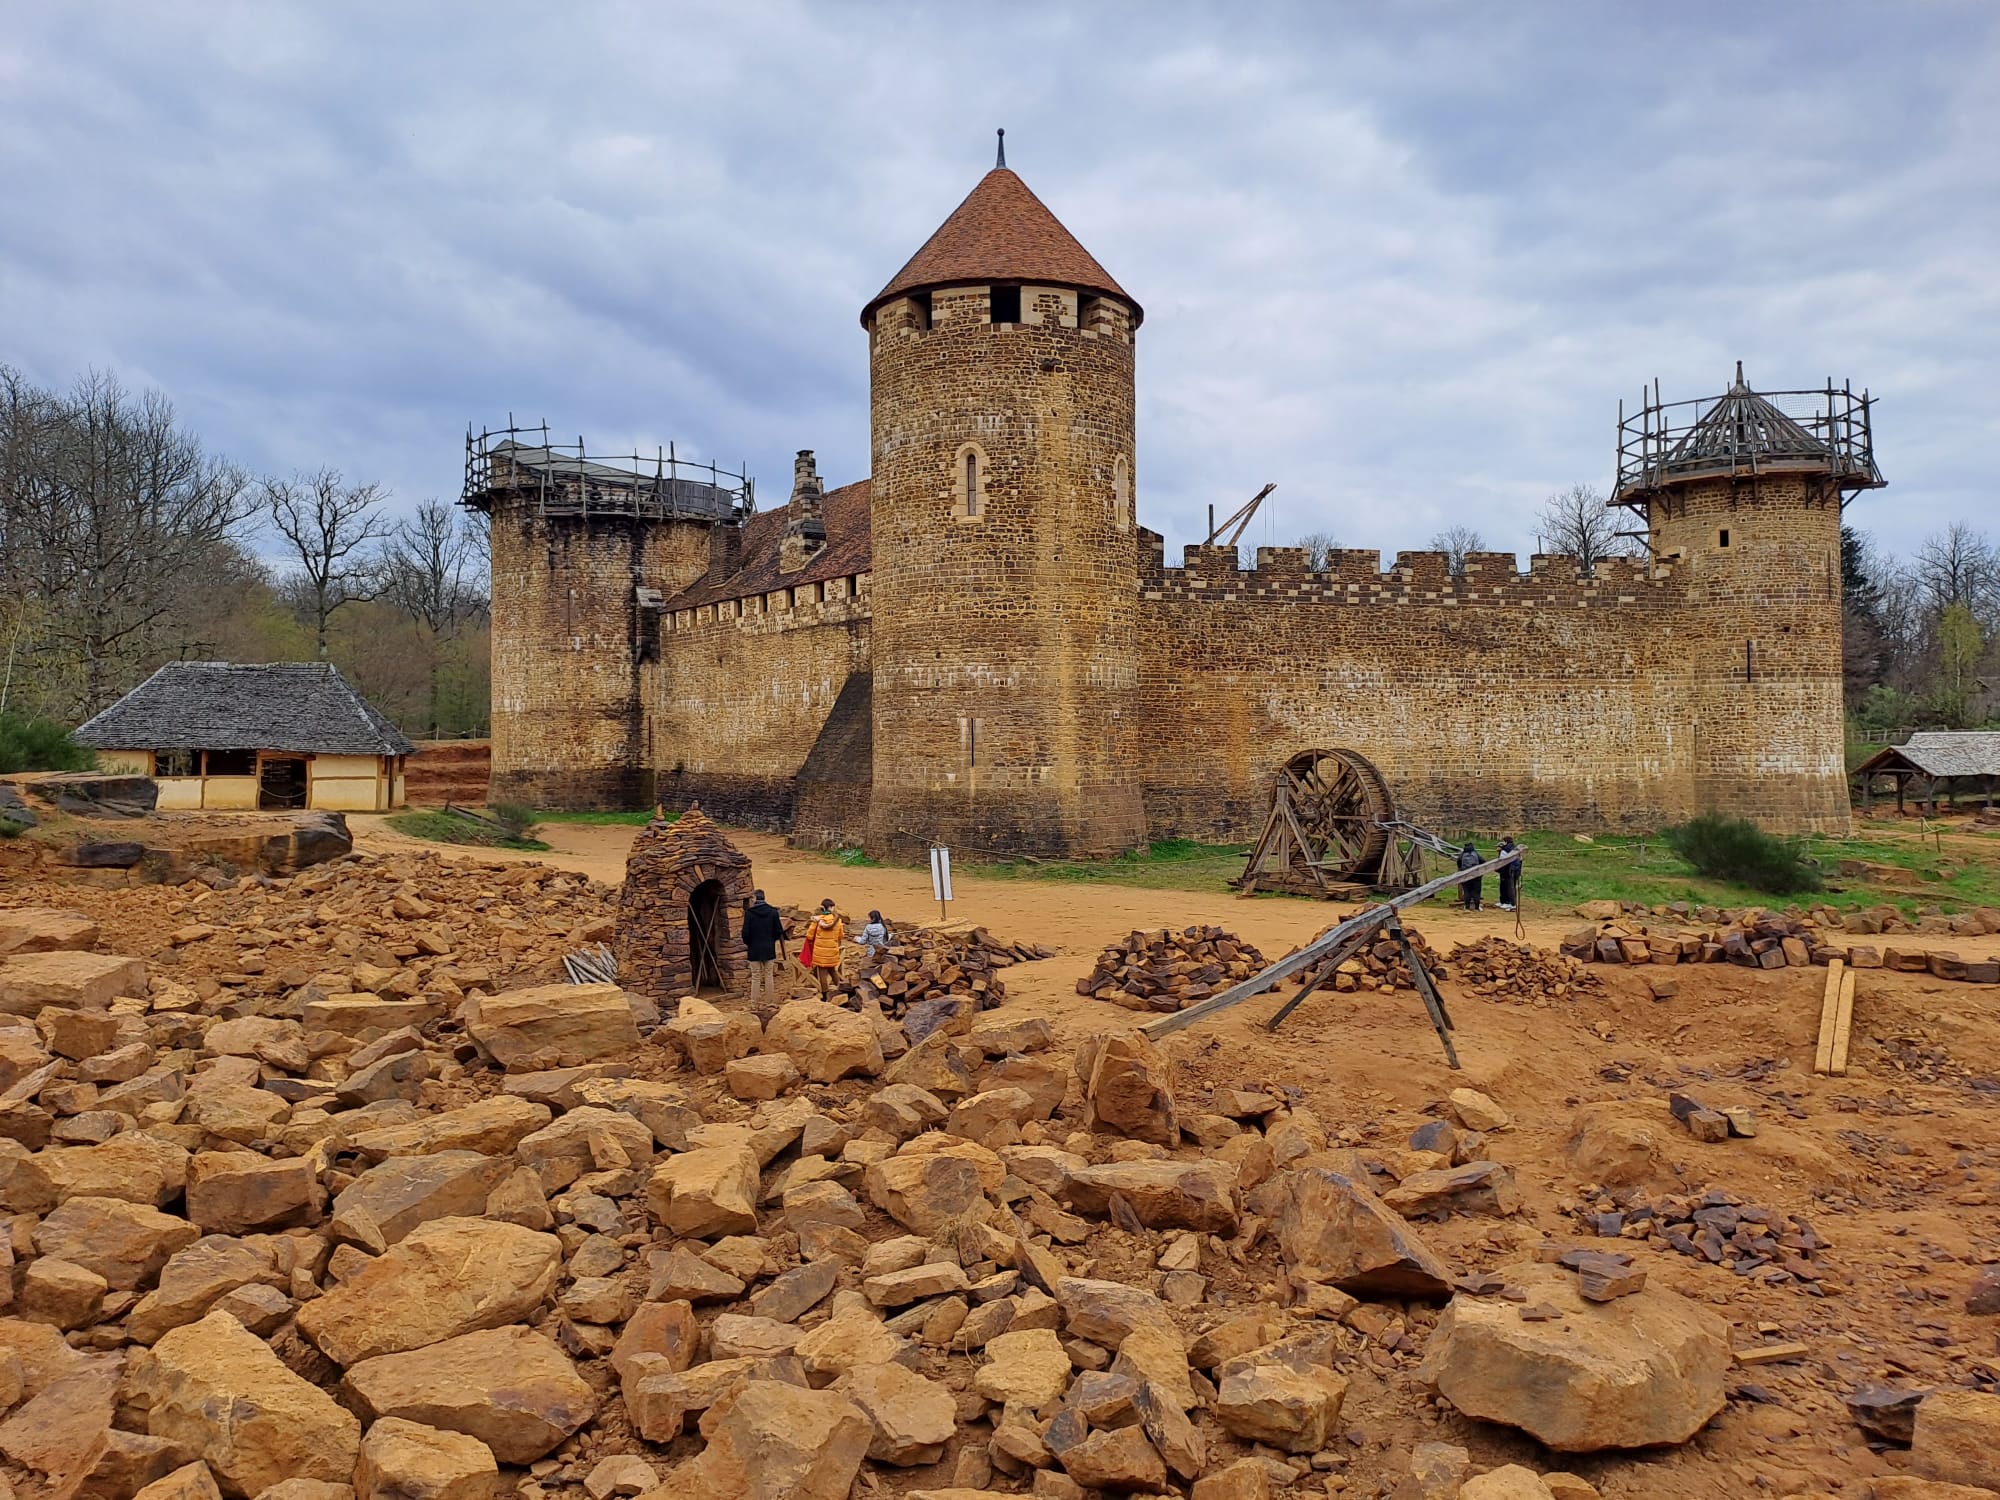 La construction d'un château fort : Guédelon